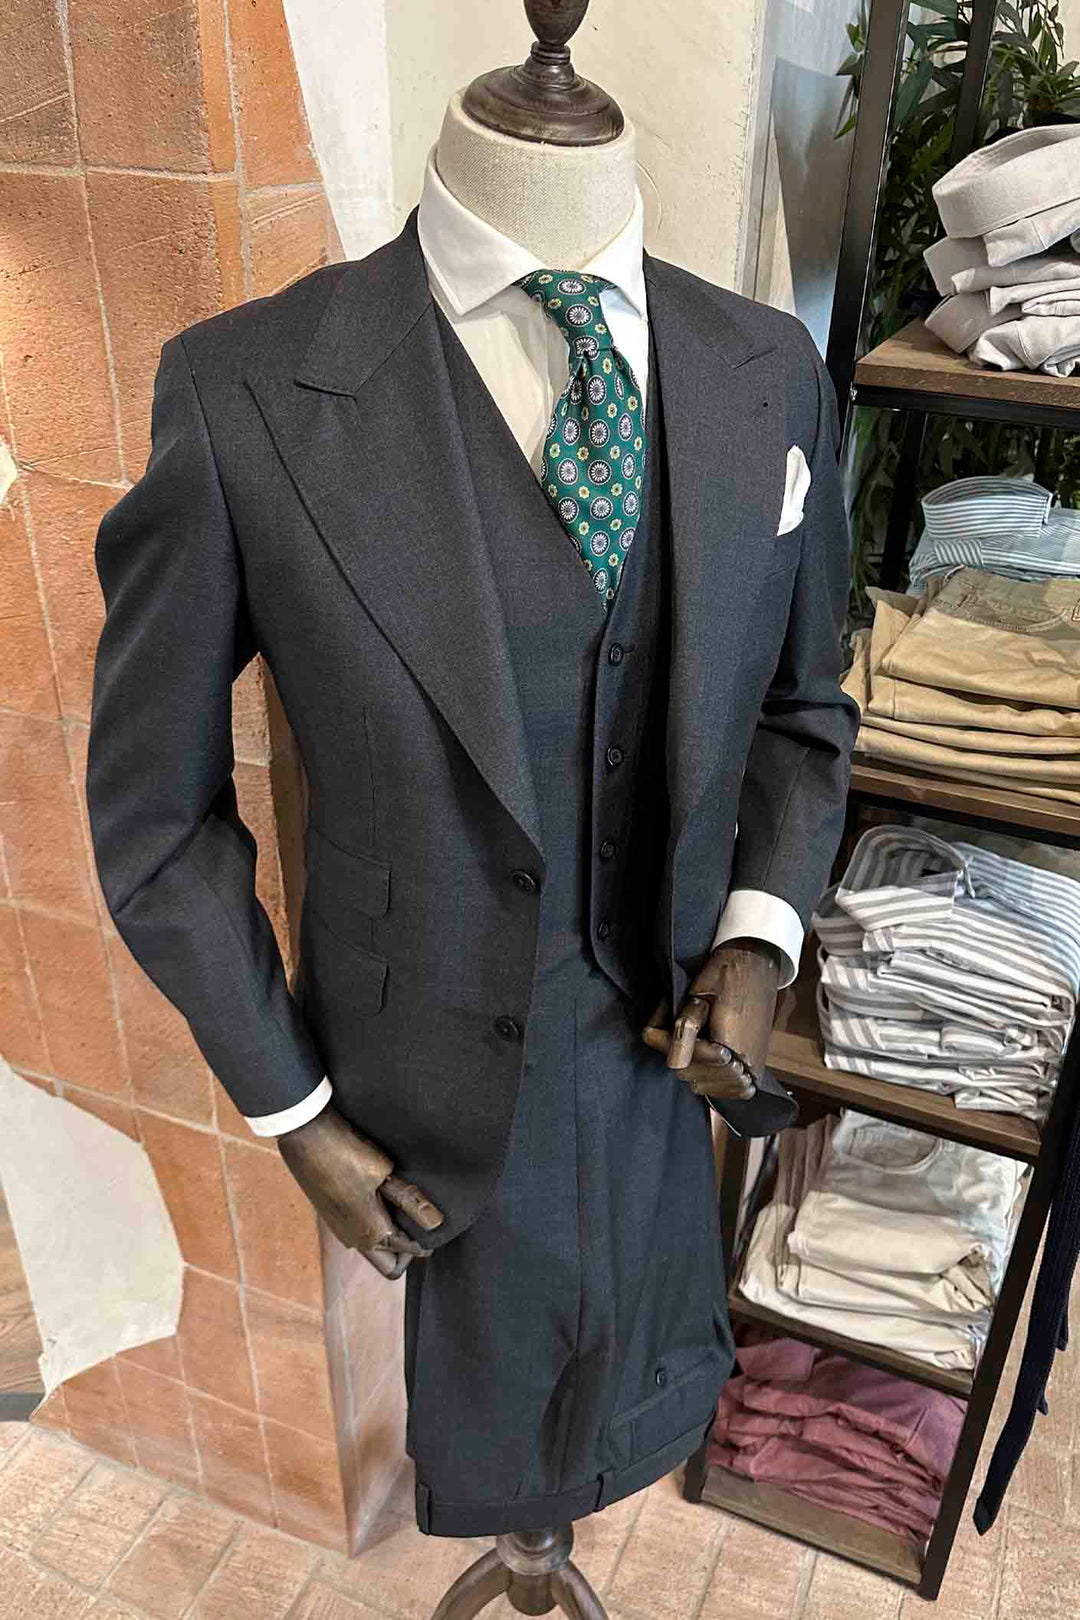 Medium Gray 3 Piece Suit Spearhead Lapel 11cm